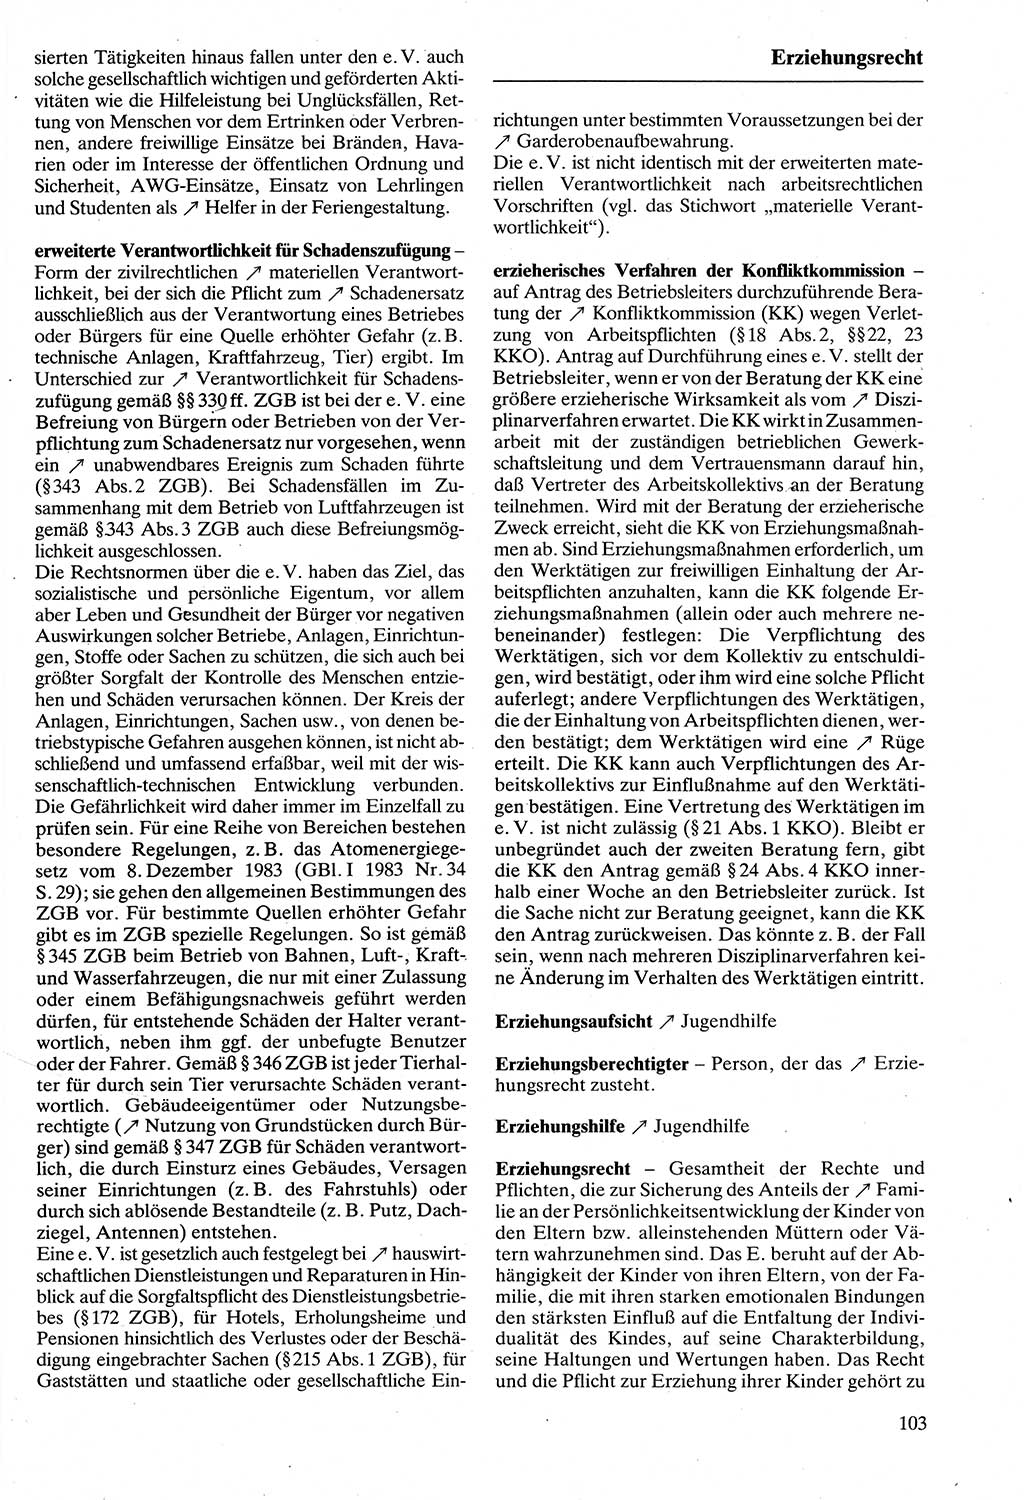 Rechtslexikon [Deutsche Demokratische Republik (DDR)] 1988, Seite 103 (Rechtslex. DDR 1988, S. 103)